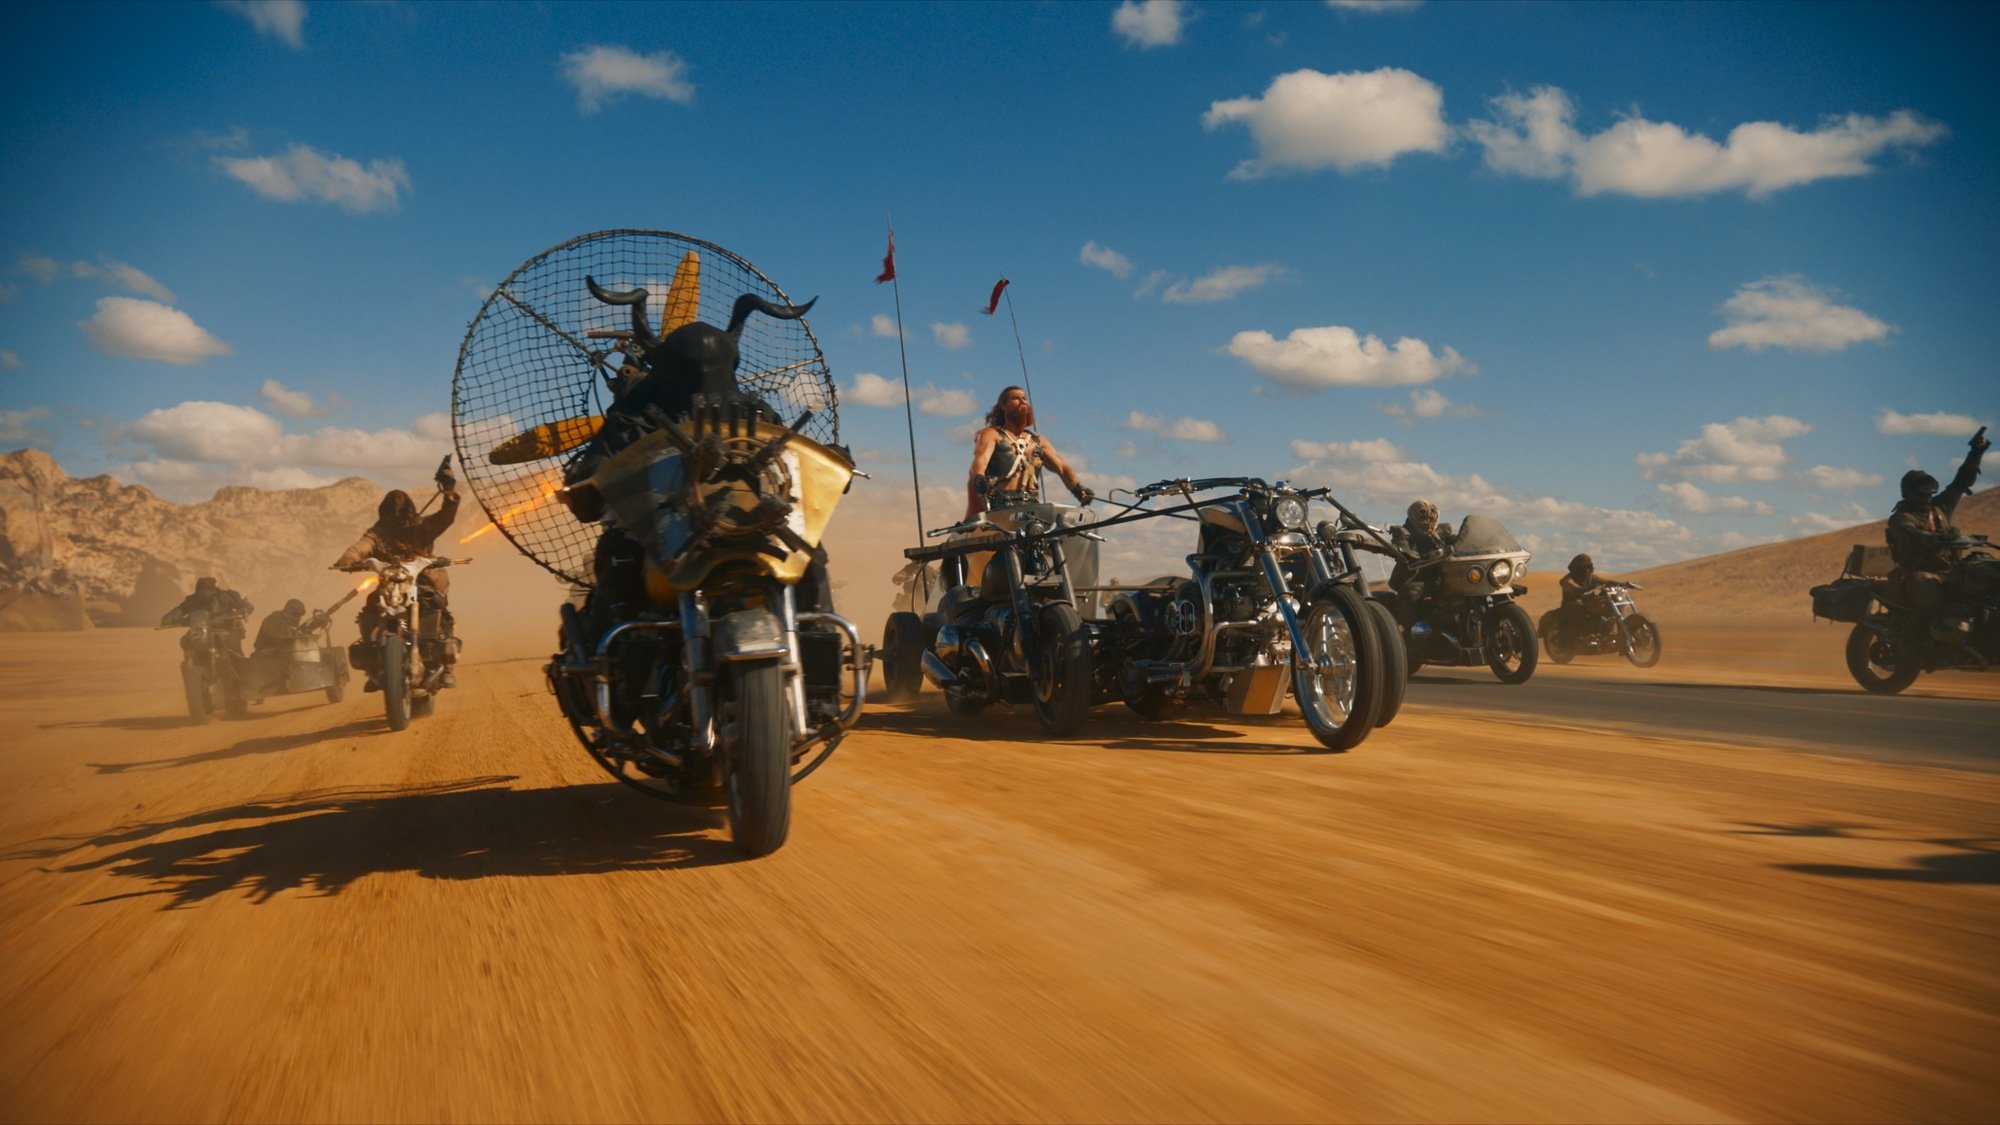 Vehicles race through the desert in "Furiosa: A Mad Max Saga."